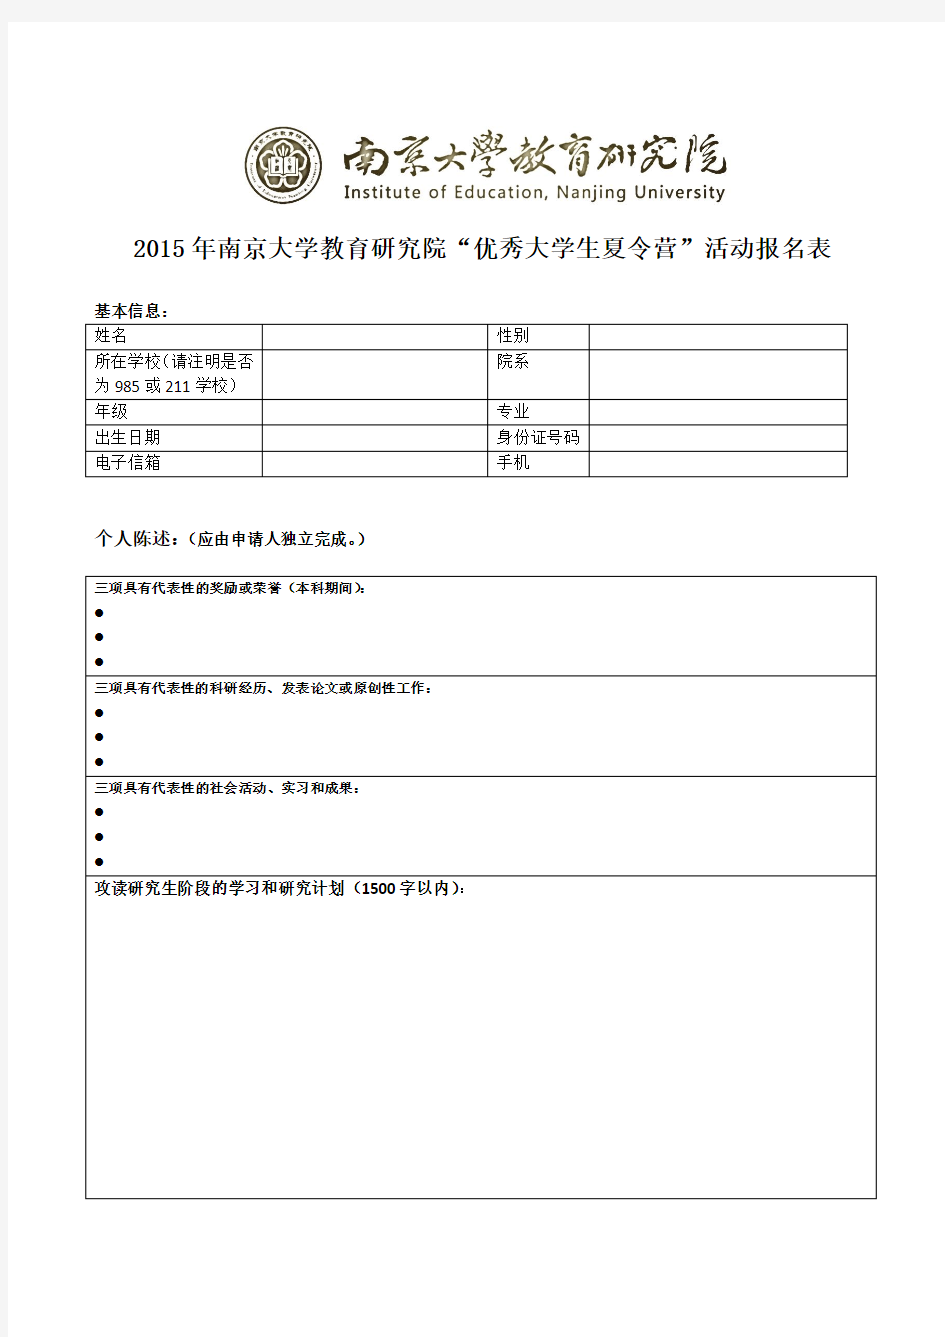 2015年南京大学教育研究院“全国优秀大学生夏令营 申请表(新)